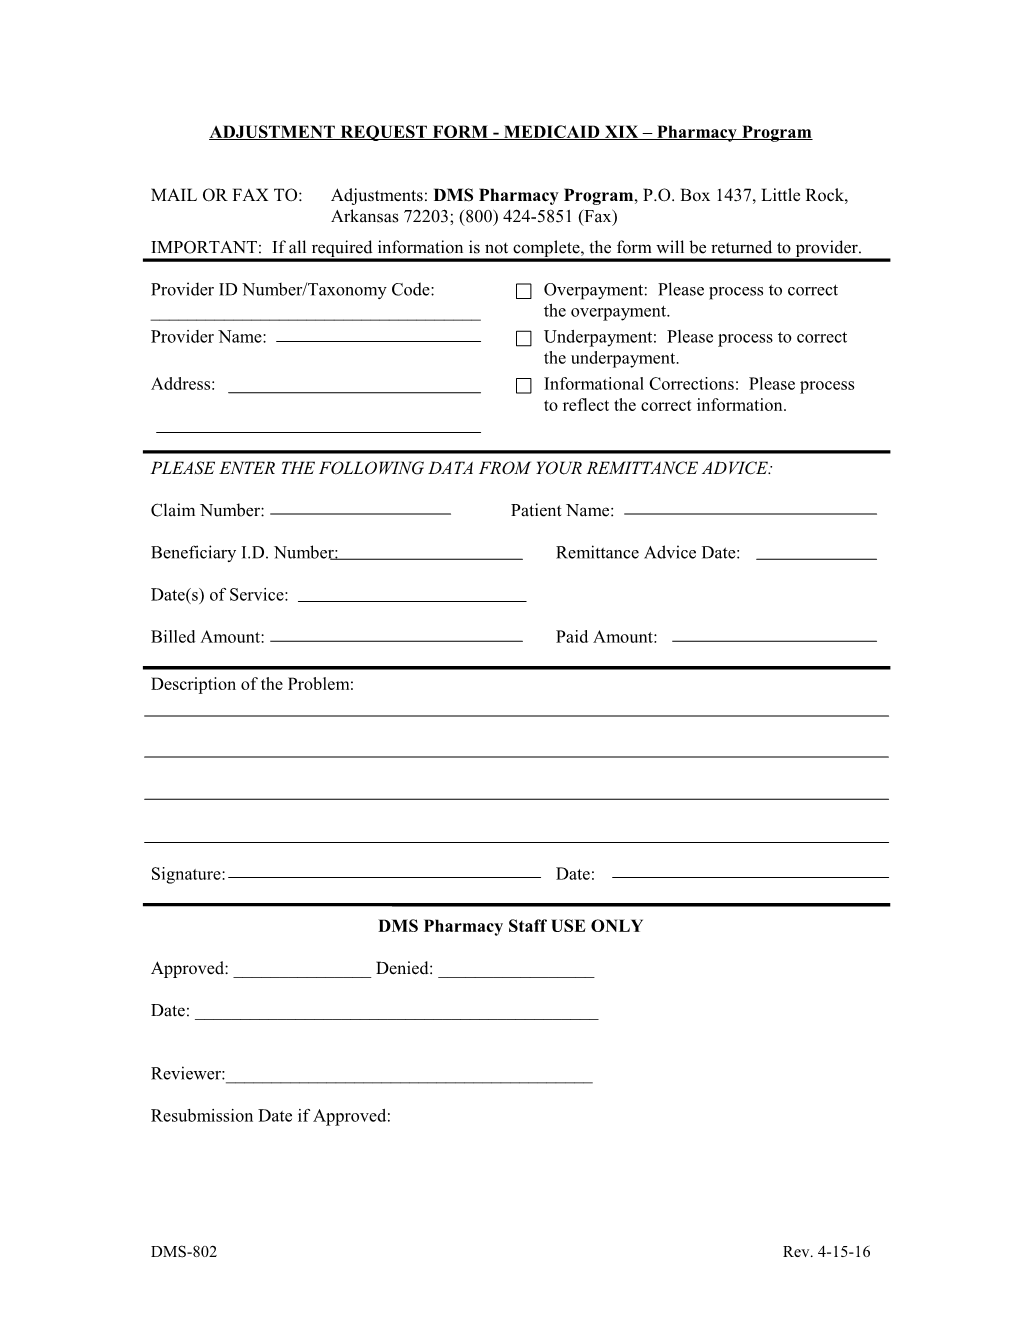 Form HP-AR-004 Adjustment Request Form - Medicaid XIX